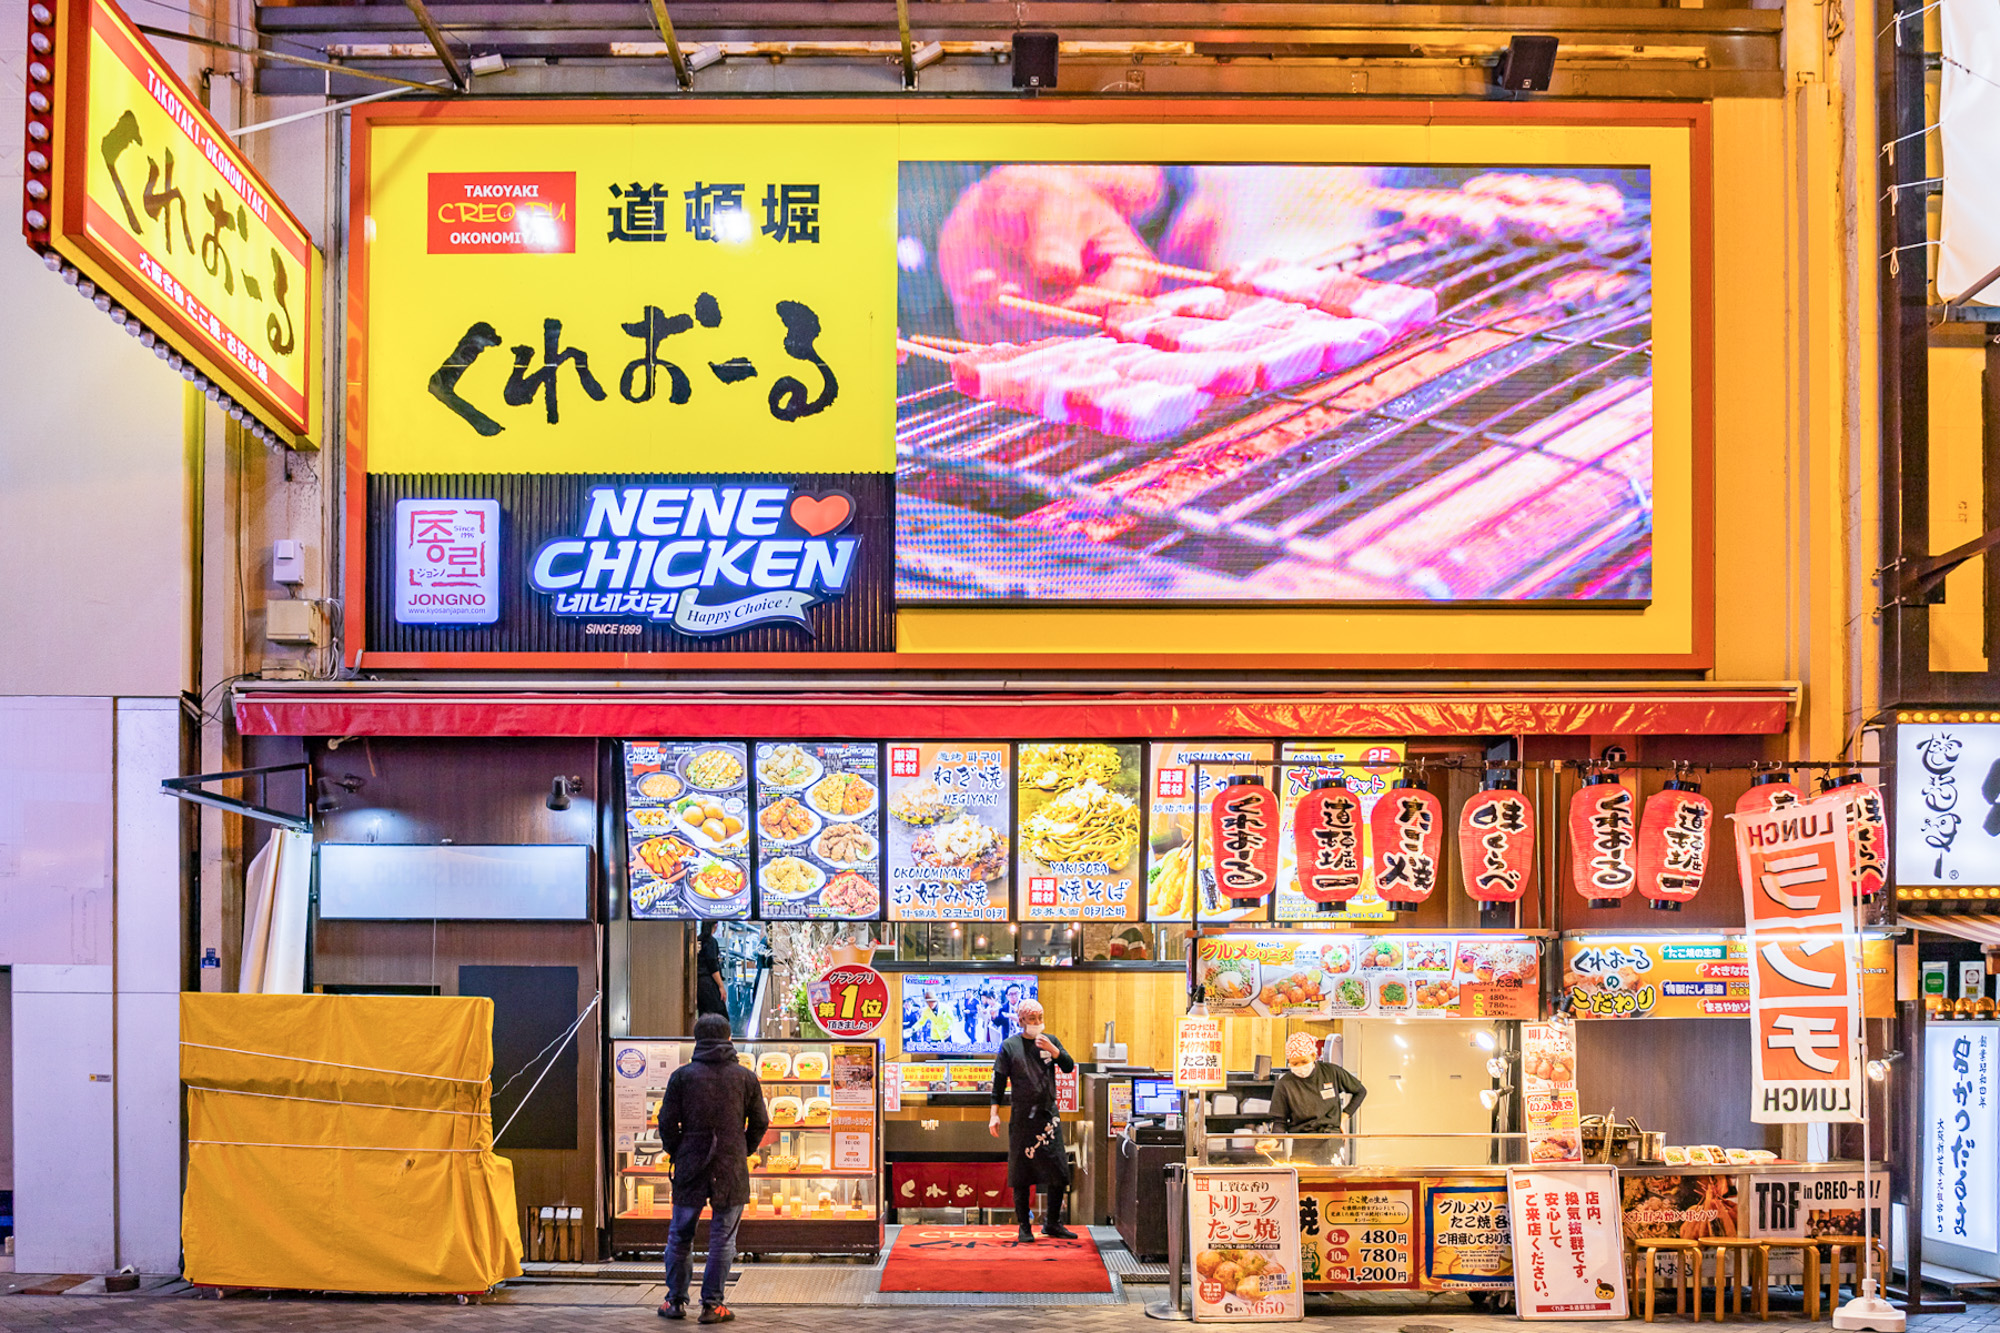 道頓堀にオープンした韓国チキン専門店 Nene Chickenで韓国旅行気分を味わおう